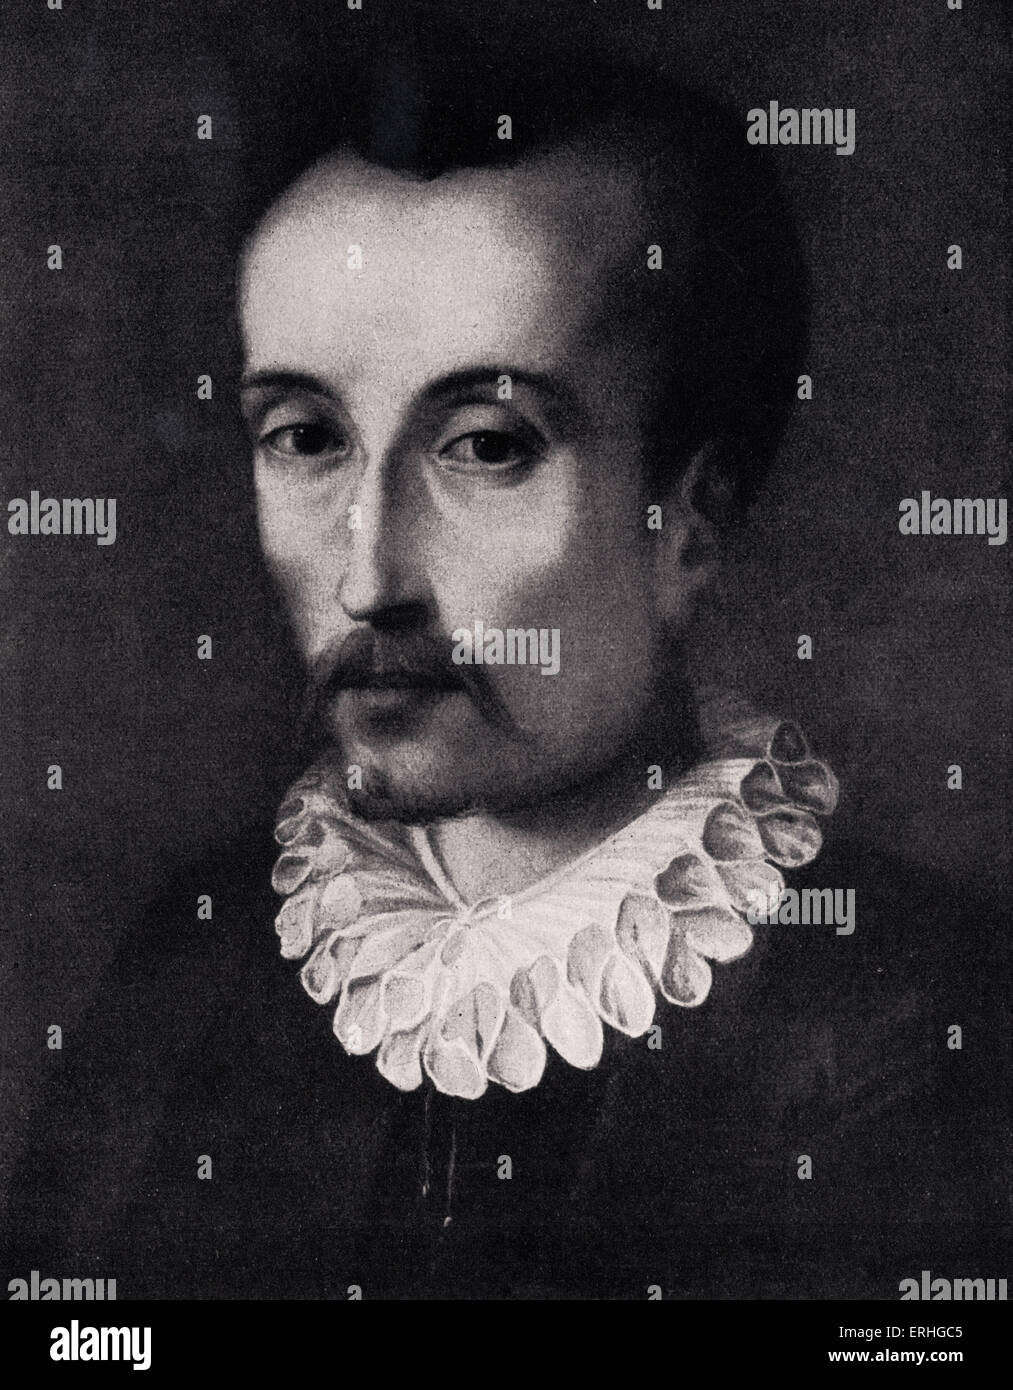 Torquato Tasso. Porträt. Italienischer Dichter der Spätrenaissance 1544-1595. Seine Werke inspirierte viele Komponisten: Monteverdi, Liszt, Stockfoto